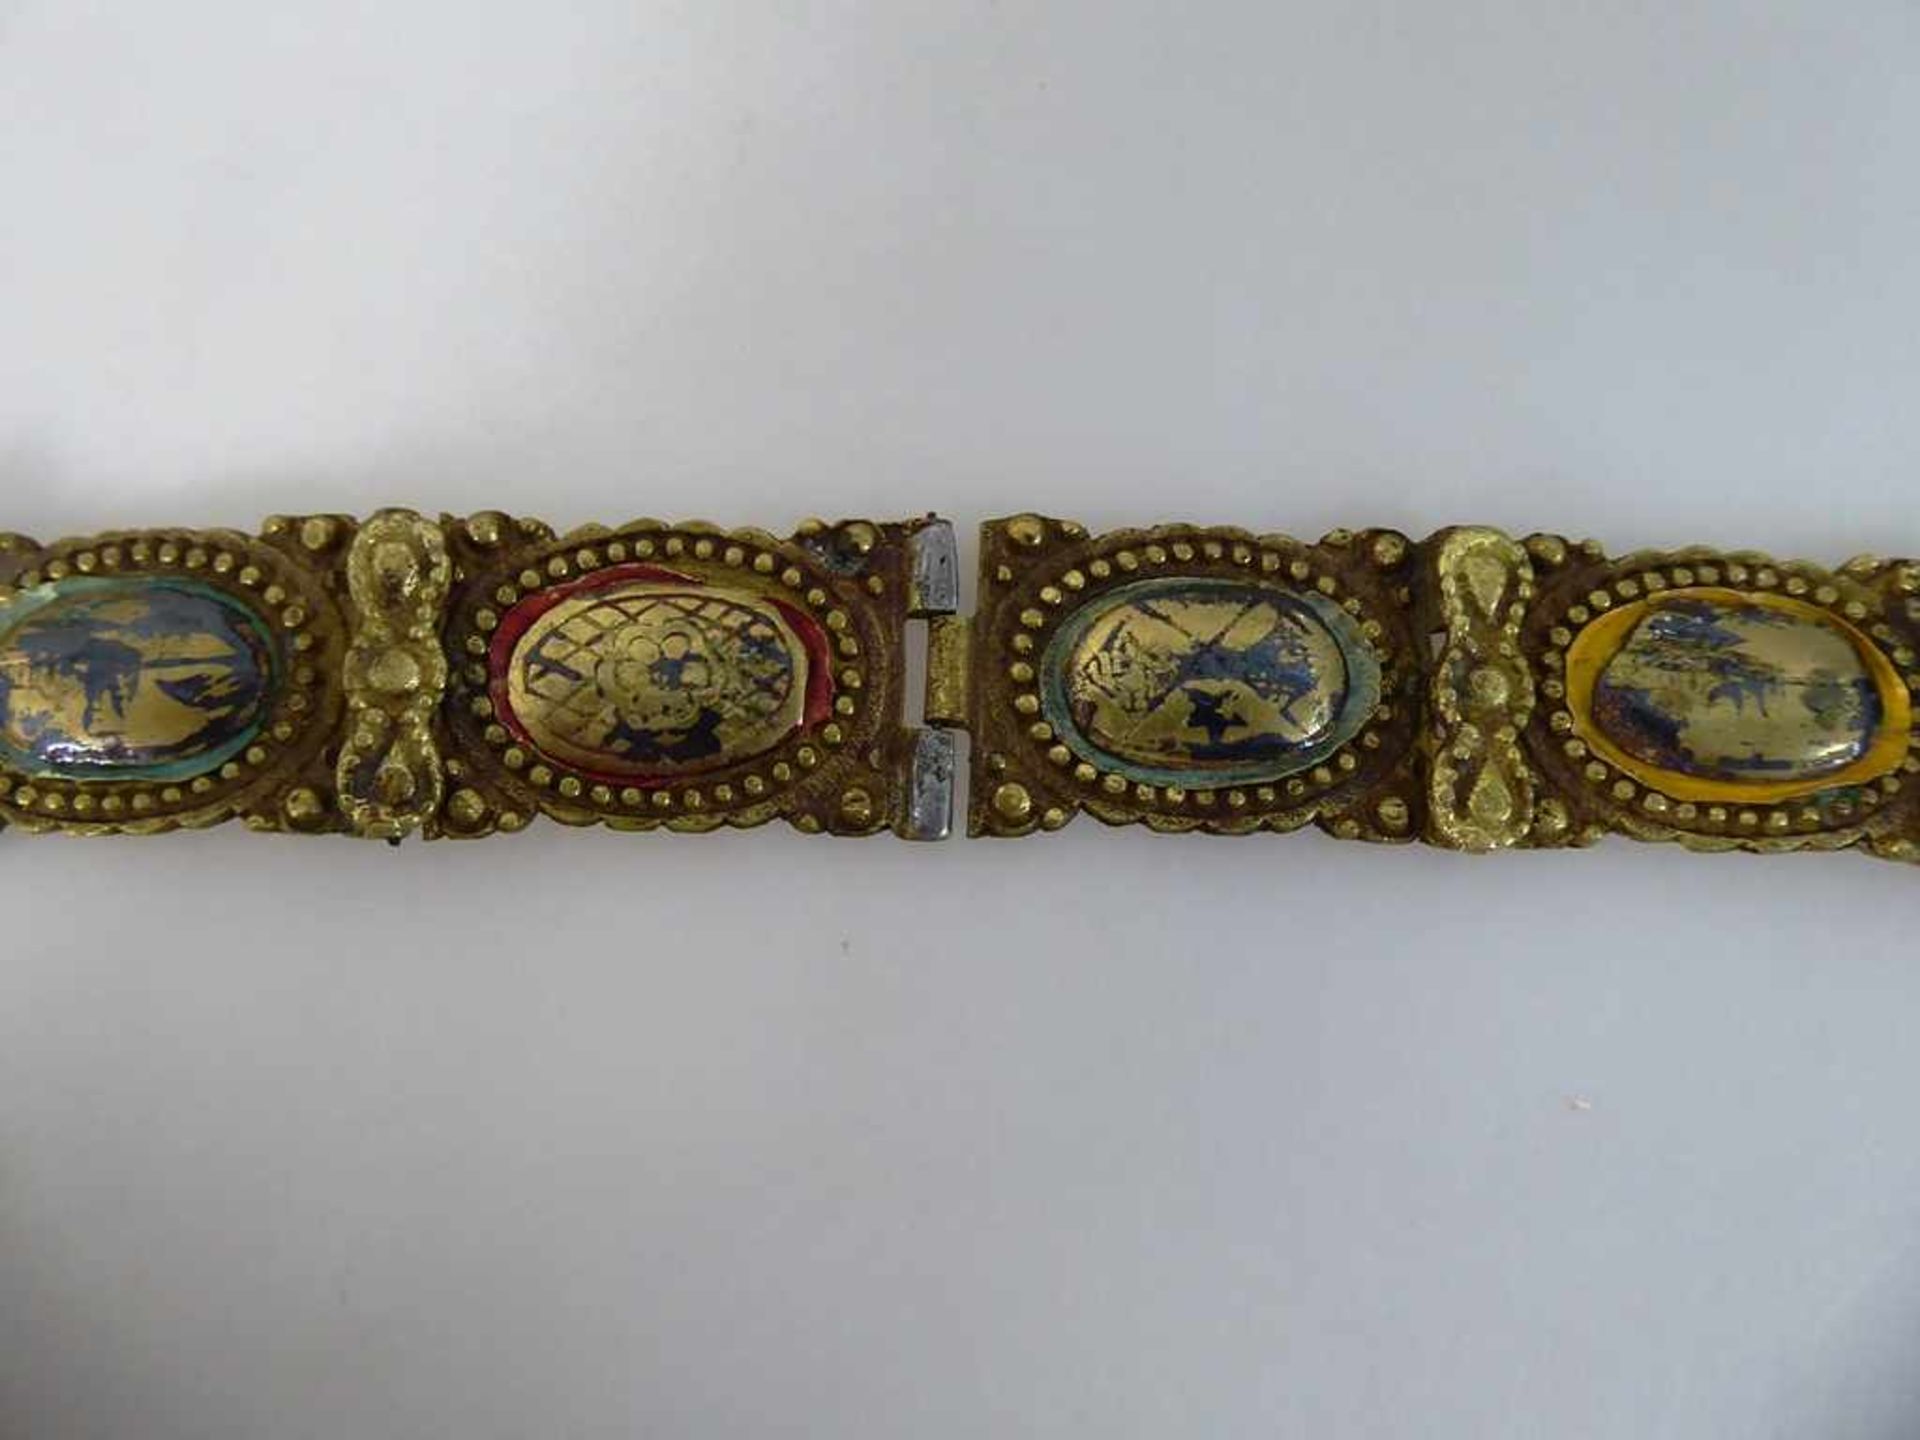 Osmanischer Gürtel / Hochzeitsgürtel, Messing, Kupfer, aufwendig gearbeitete Schnalle, verziert - Bild 2 aus 2